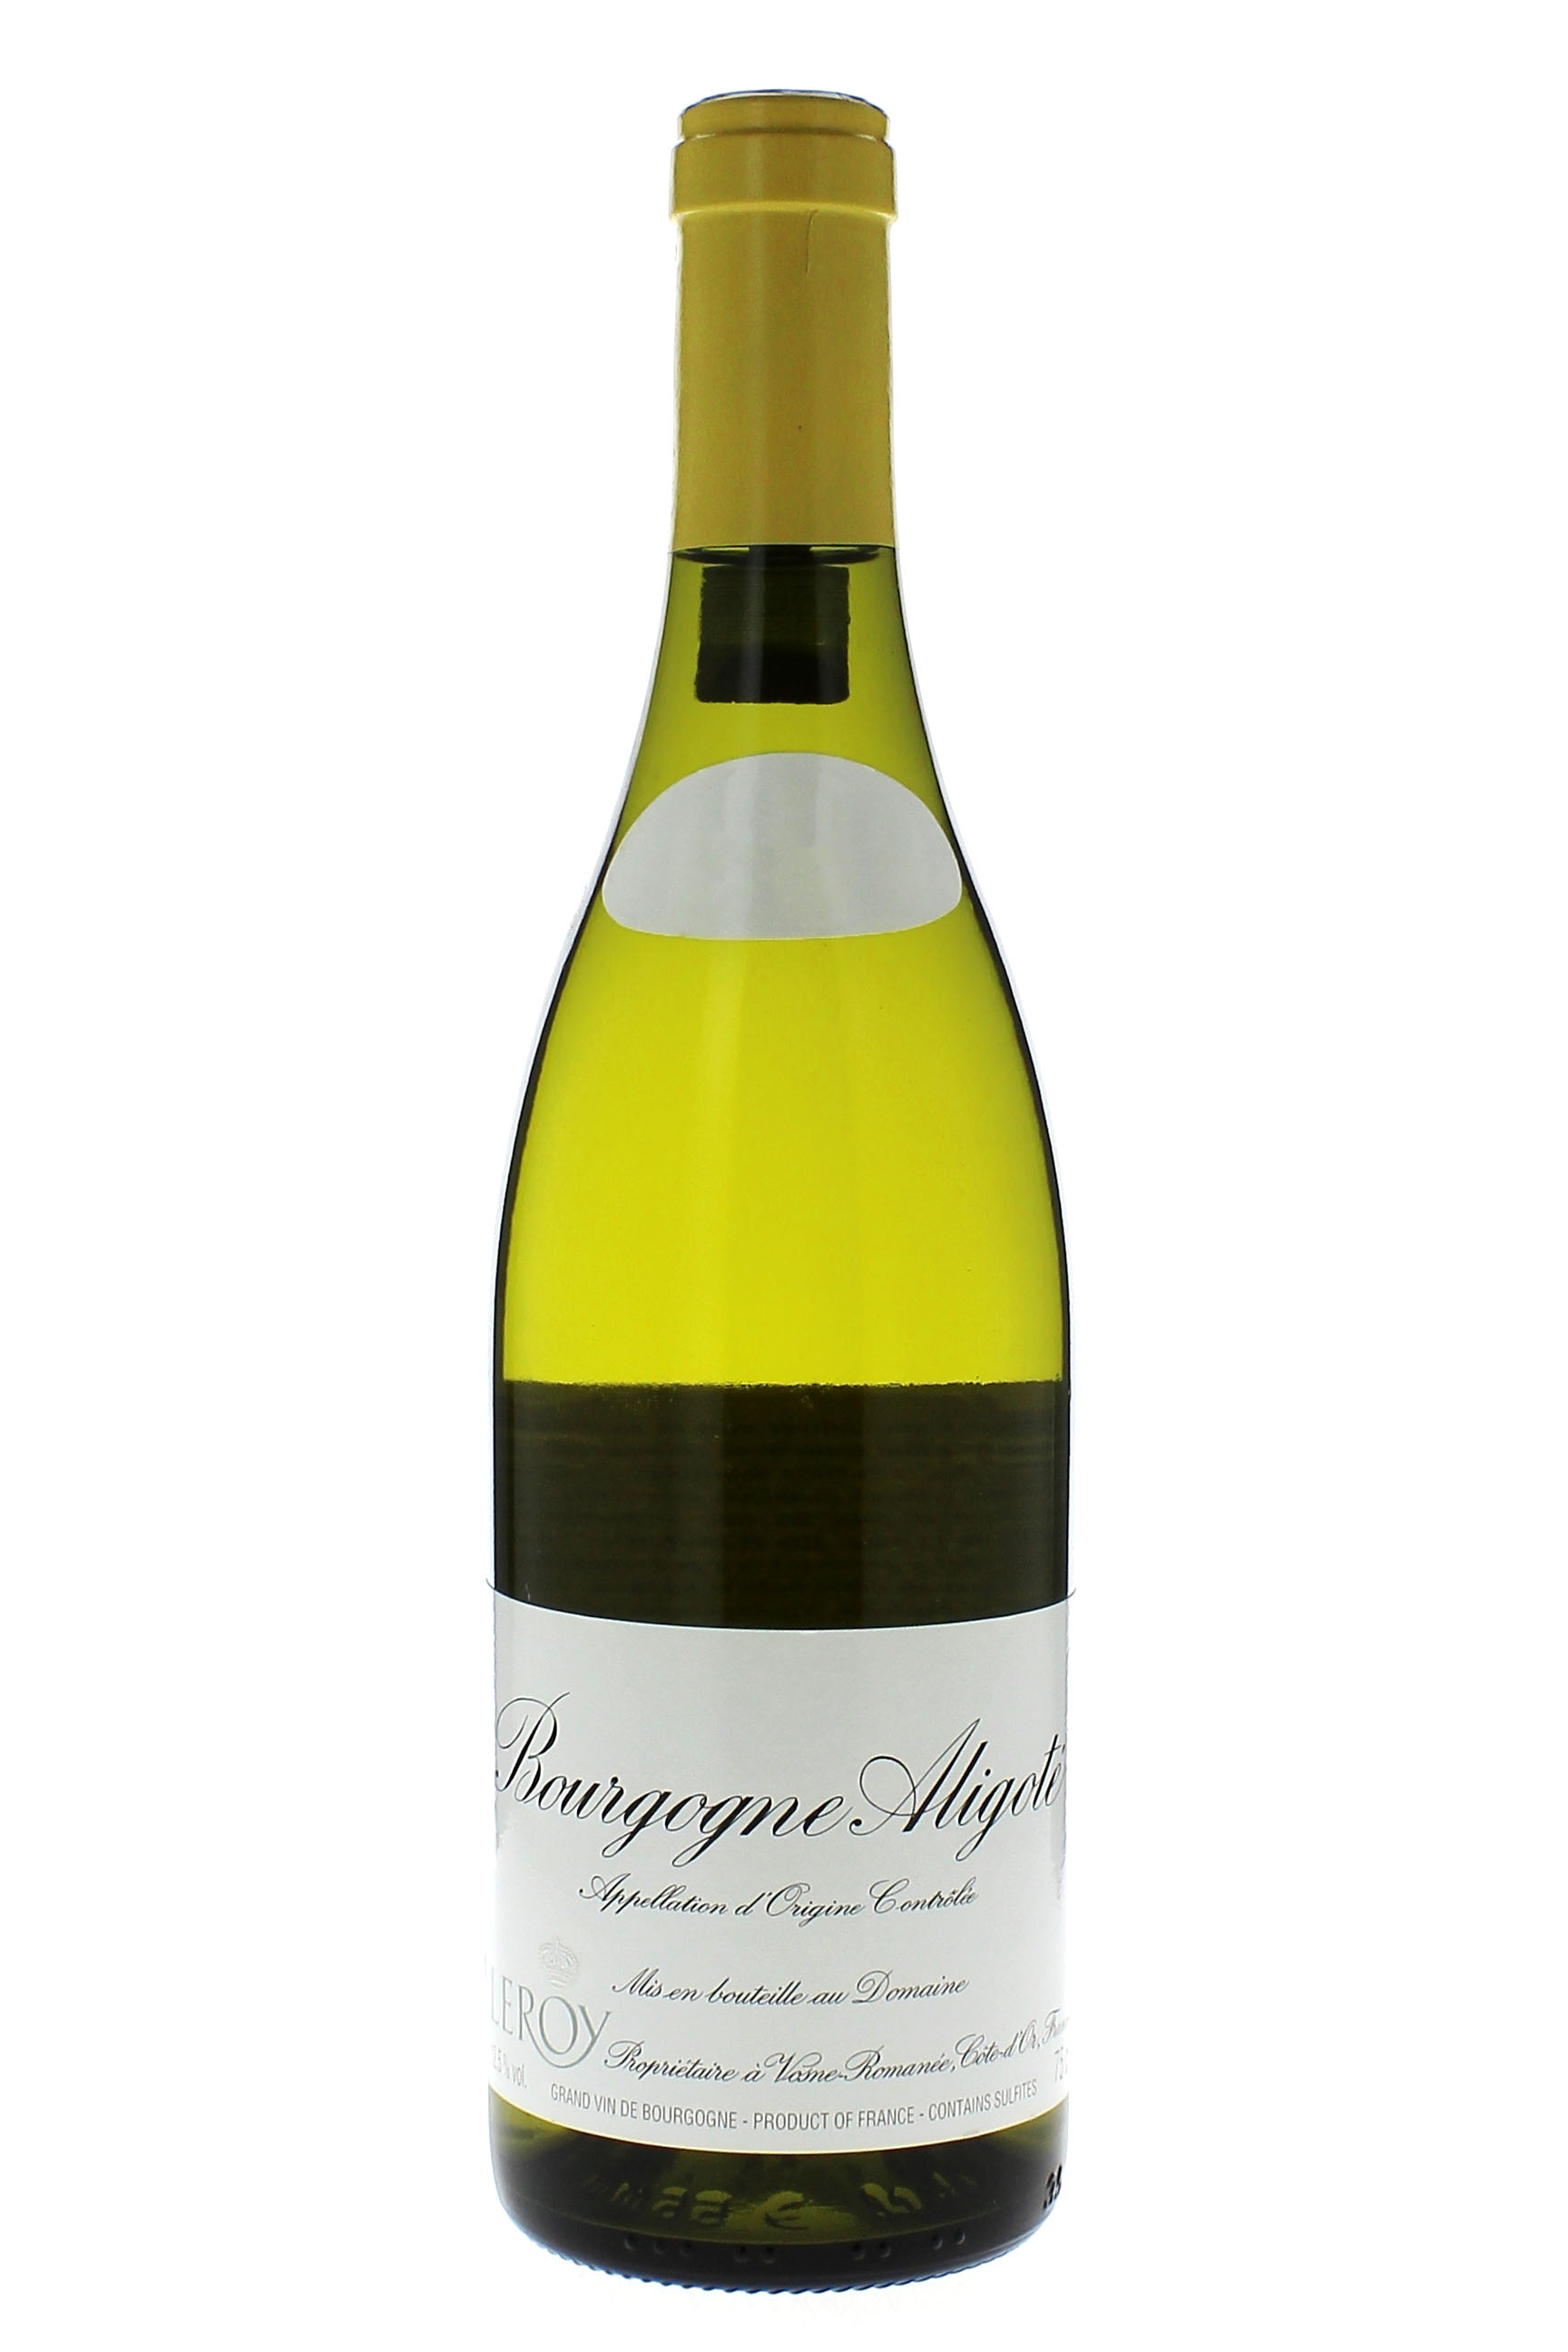 Bourgogne aligot 2014 Domaine LEROY, Bourgogne blanc